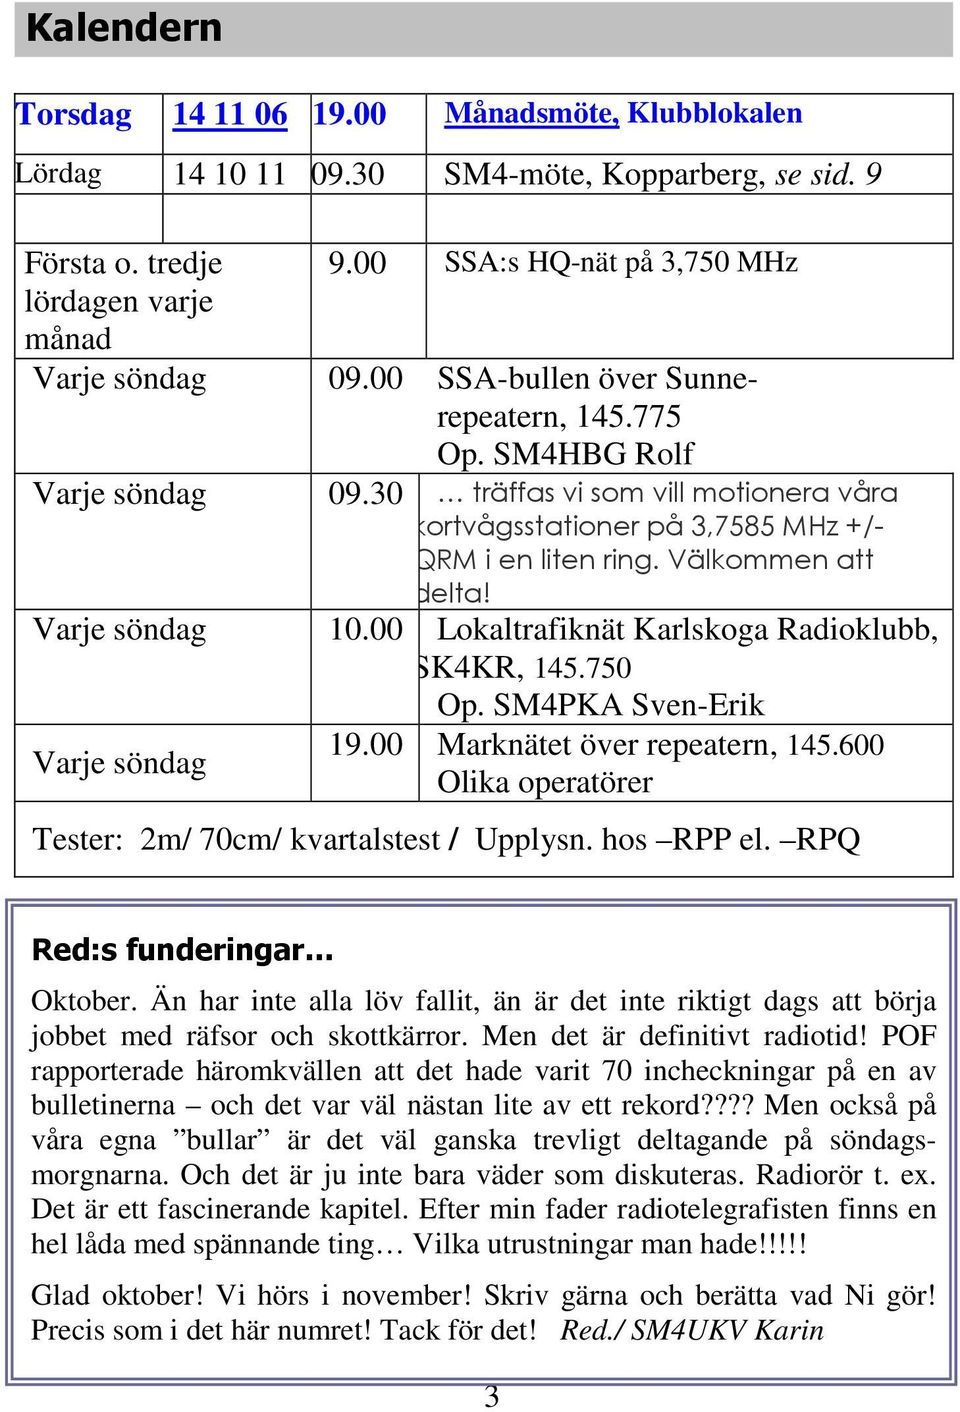 Varje söndag 10.00 Lokaltrafiknät Karlskoga Radioklubb, SK4KR, 145.750 Op. SM4PKA Sven-Erik Varje söndag 19.00 Marknätet över repeatern, 145.